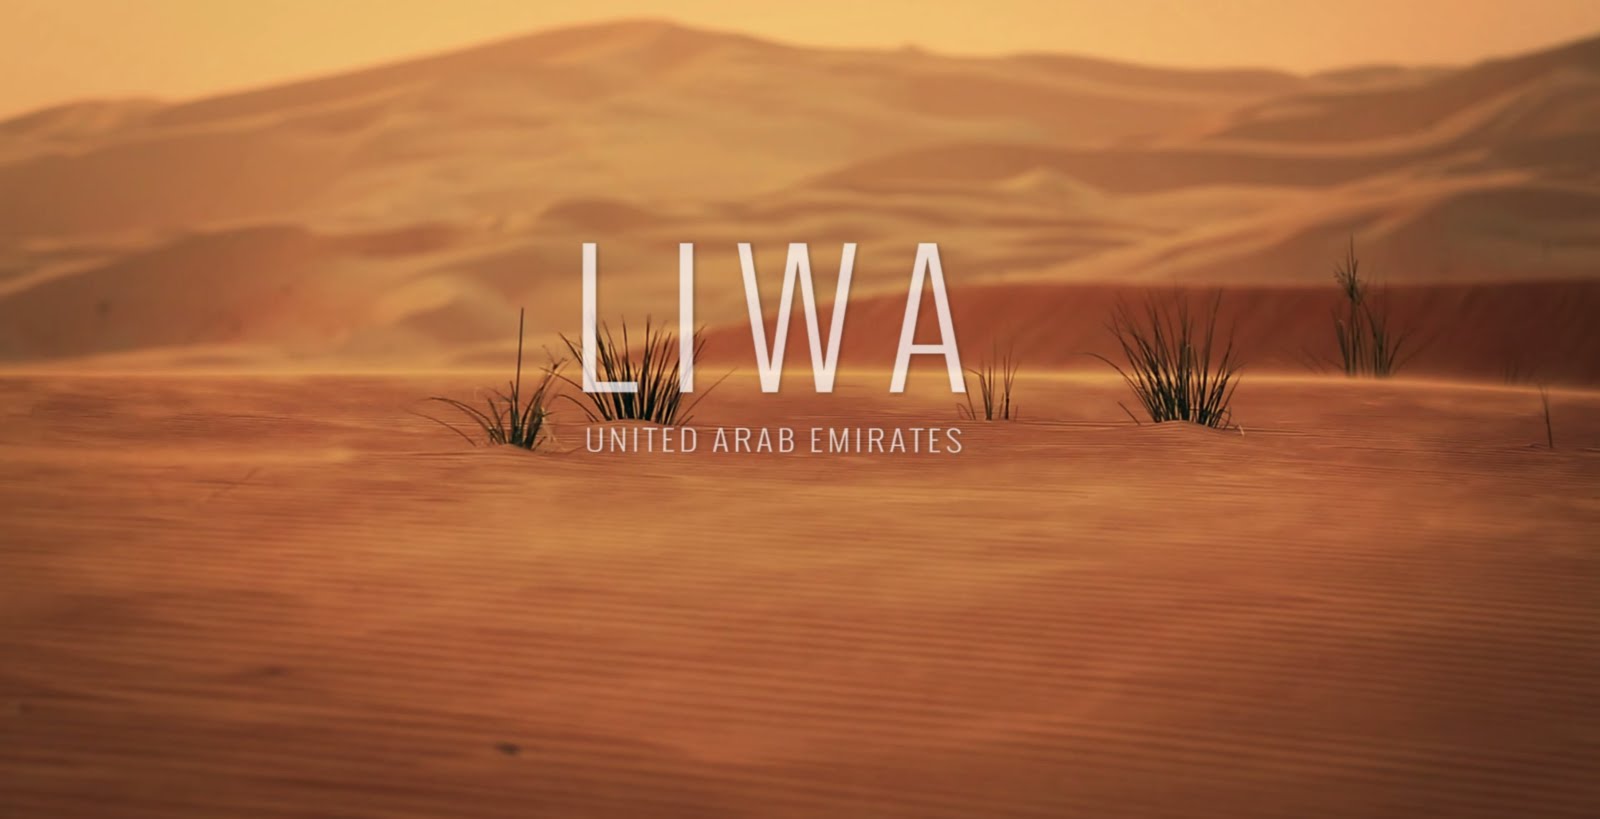 صحراء ليوا في الإمارات العربية